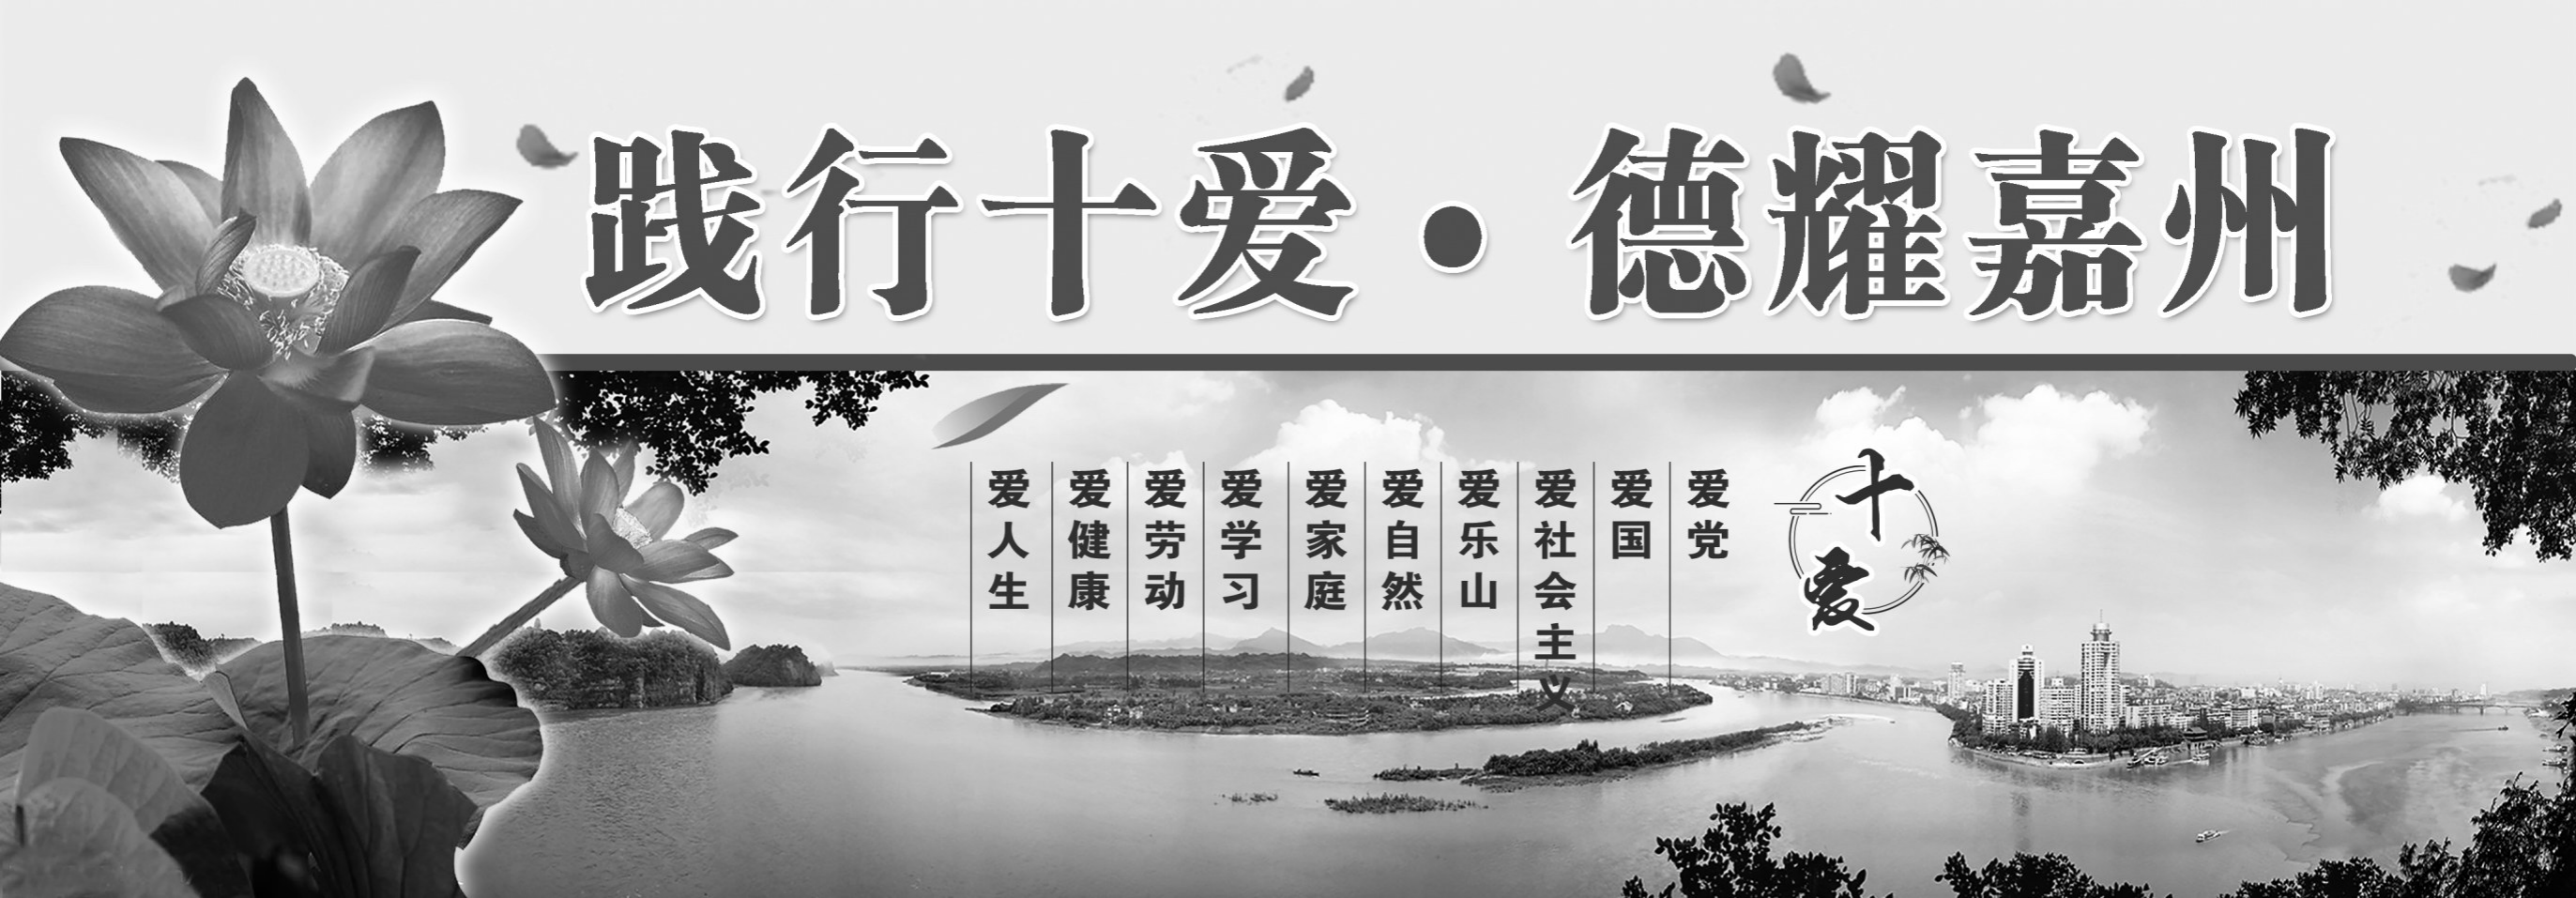 三江都市报公益广告(图1)